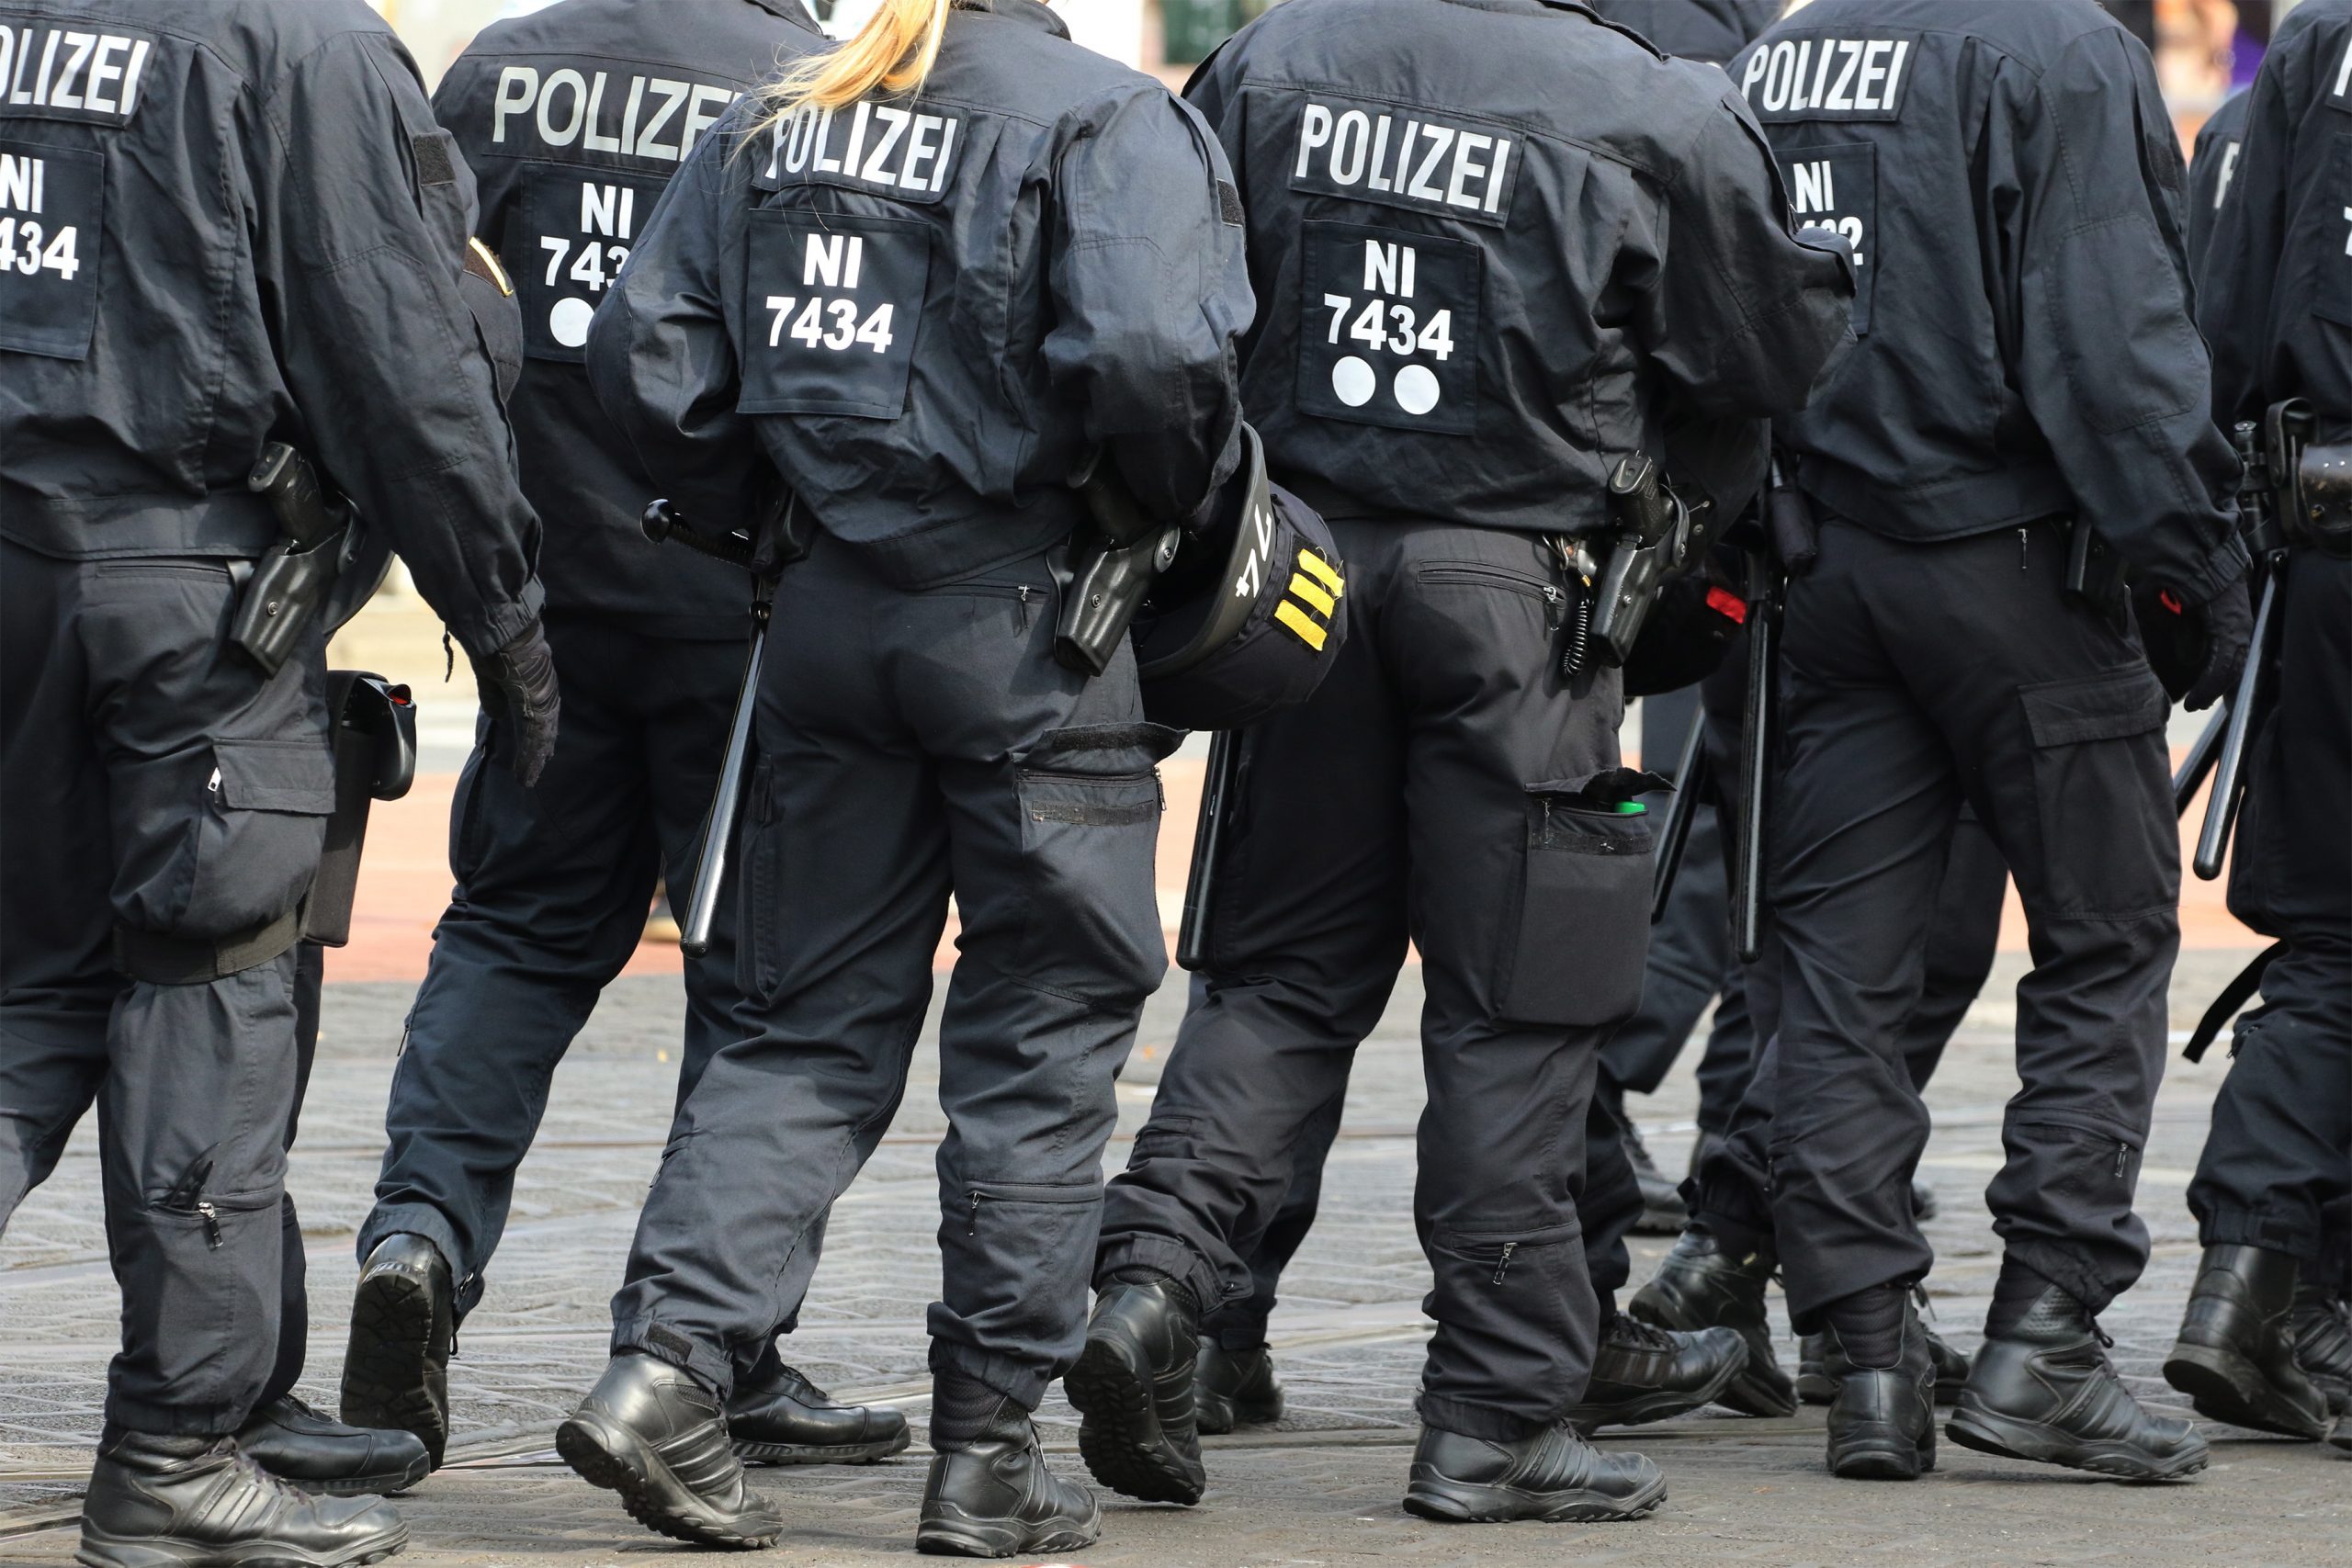 Επίθεση με μαχαίρι σε σχολείο στη Γερμανία. Τέσσερις τραυματίες, συνελήφθη ο έφηβος δράστης